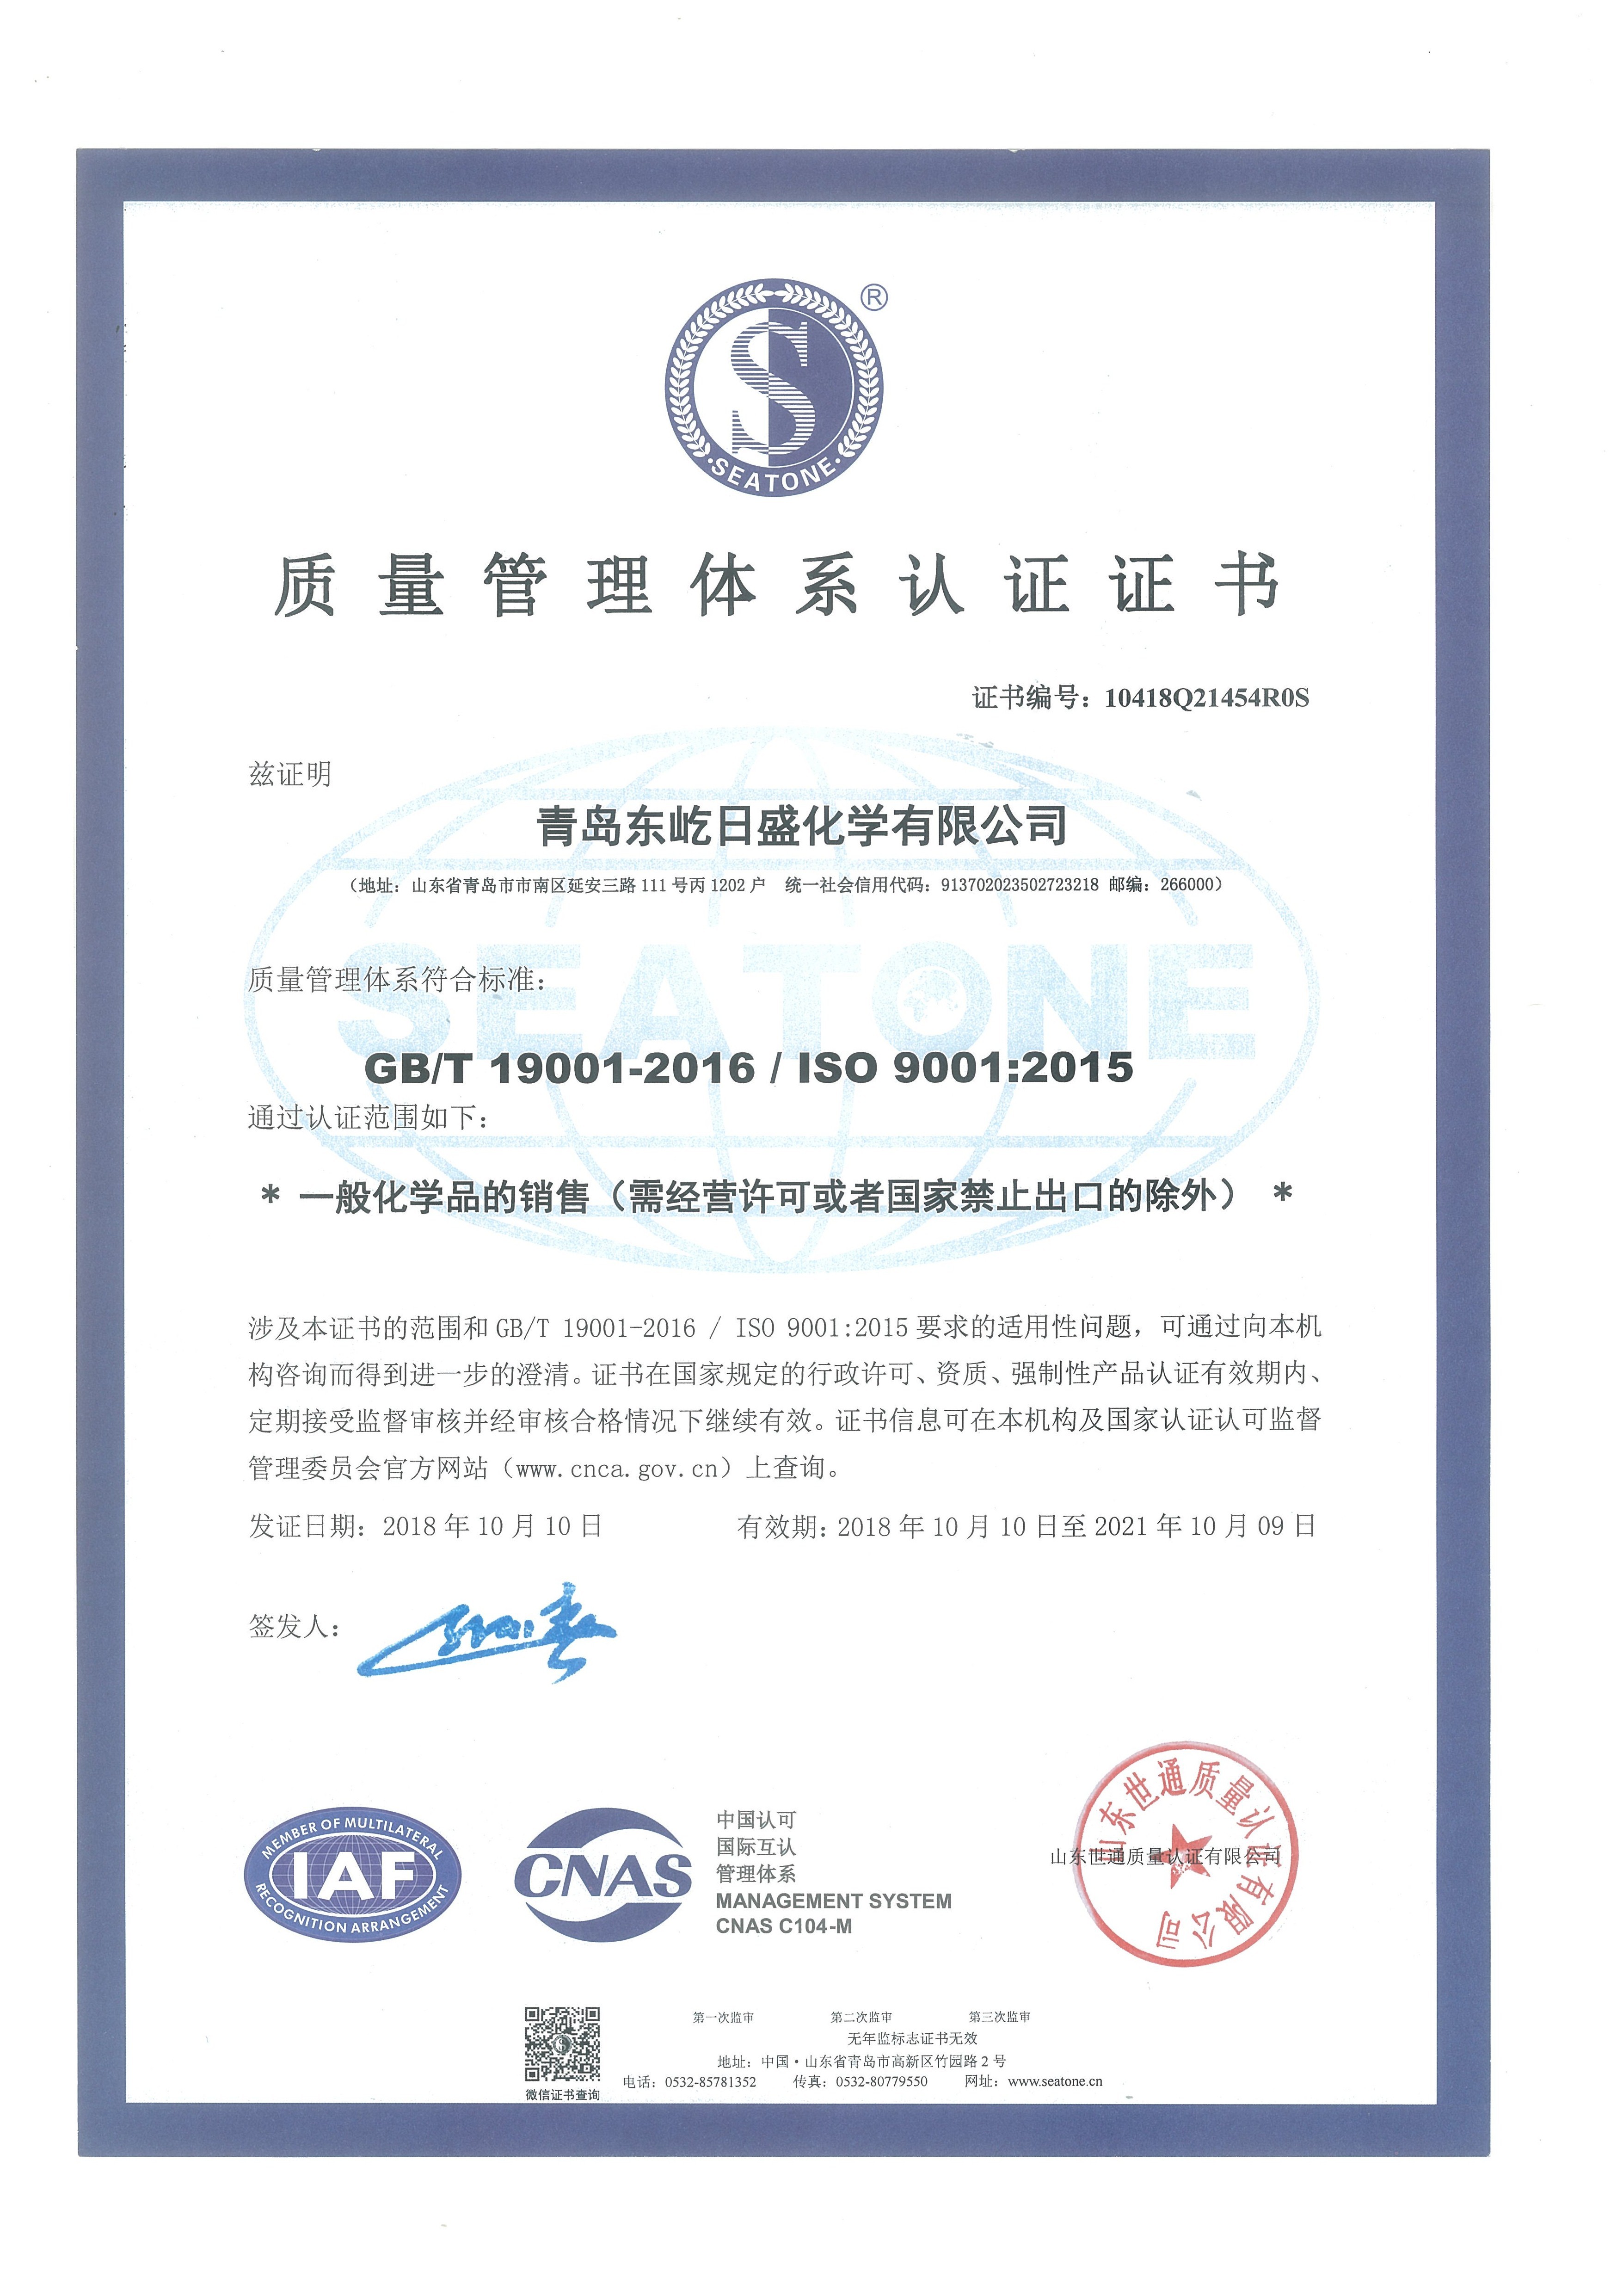 চীন QINGDAO DOEAST CHEMICAL CO., LTD. সার্টিফিকেশন